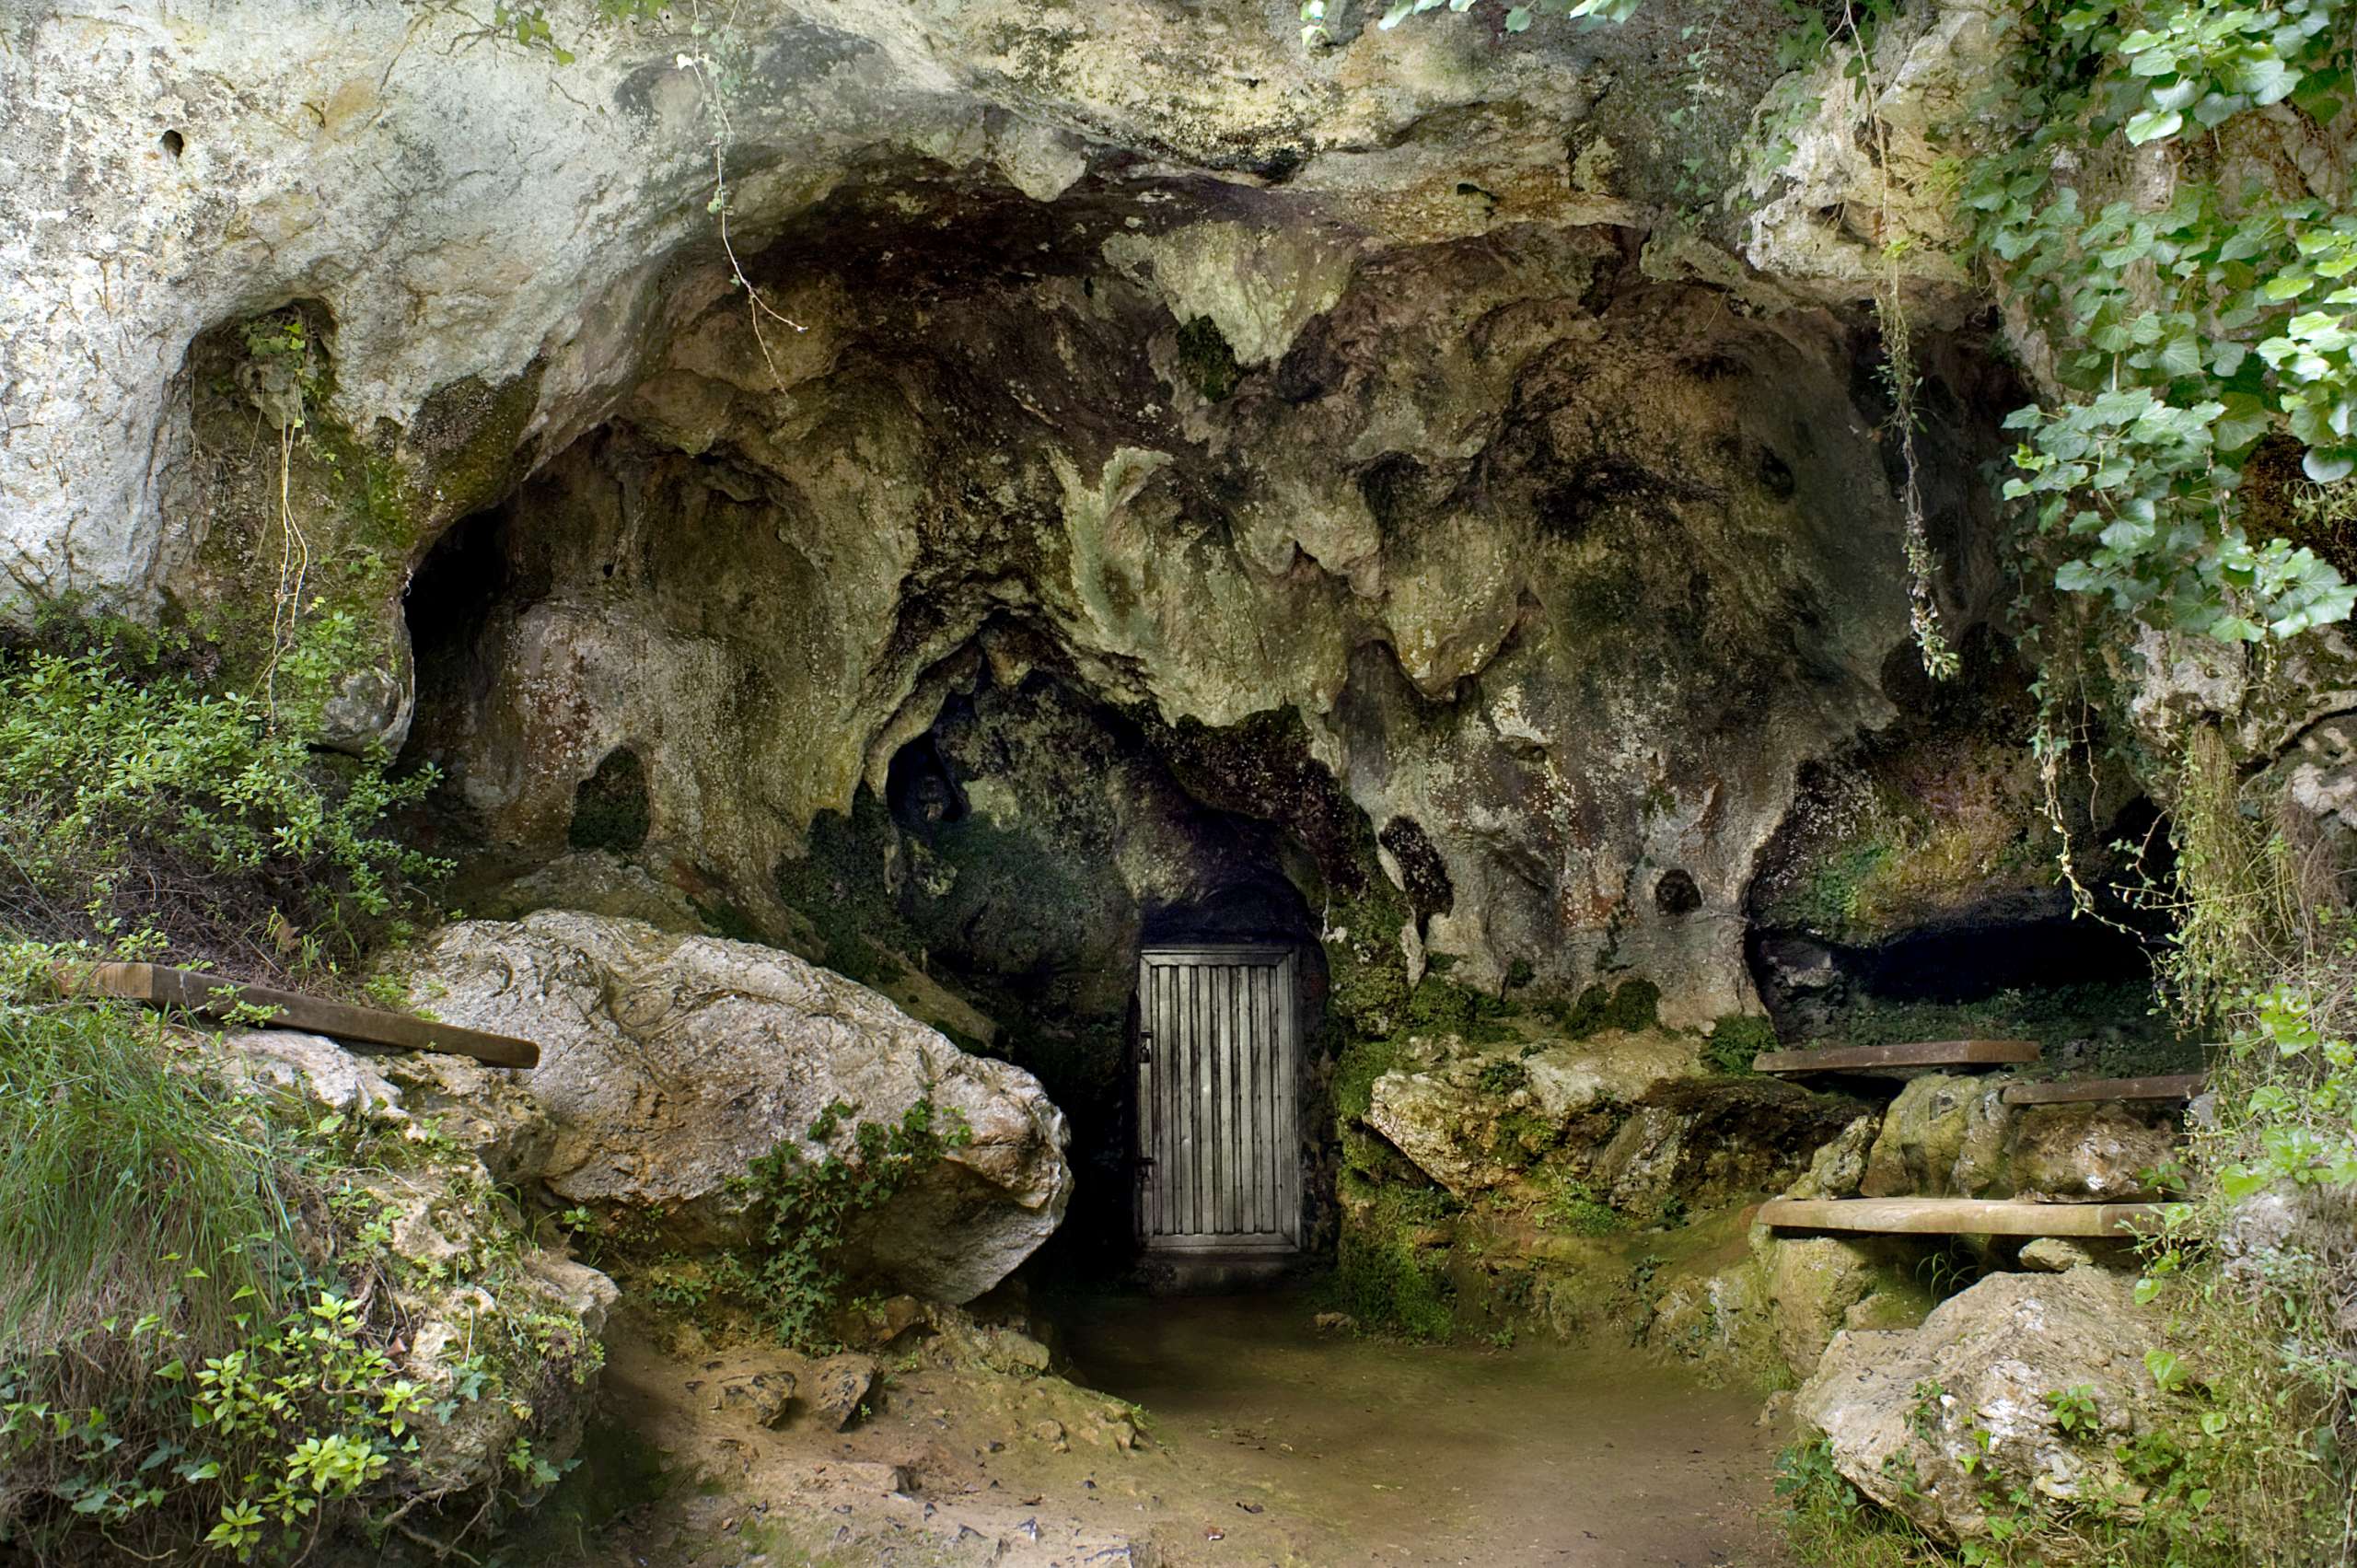 Entrada de la Cueva de 'El Buxu', Cangas de Onís (Asturias), donde se encontraron las puntas de flecha del Solutrense con pegamento.